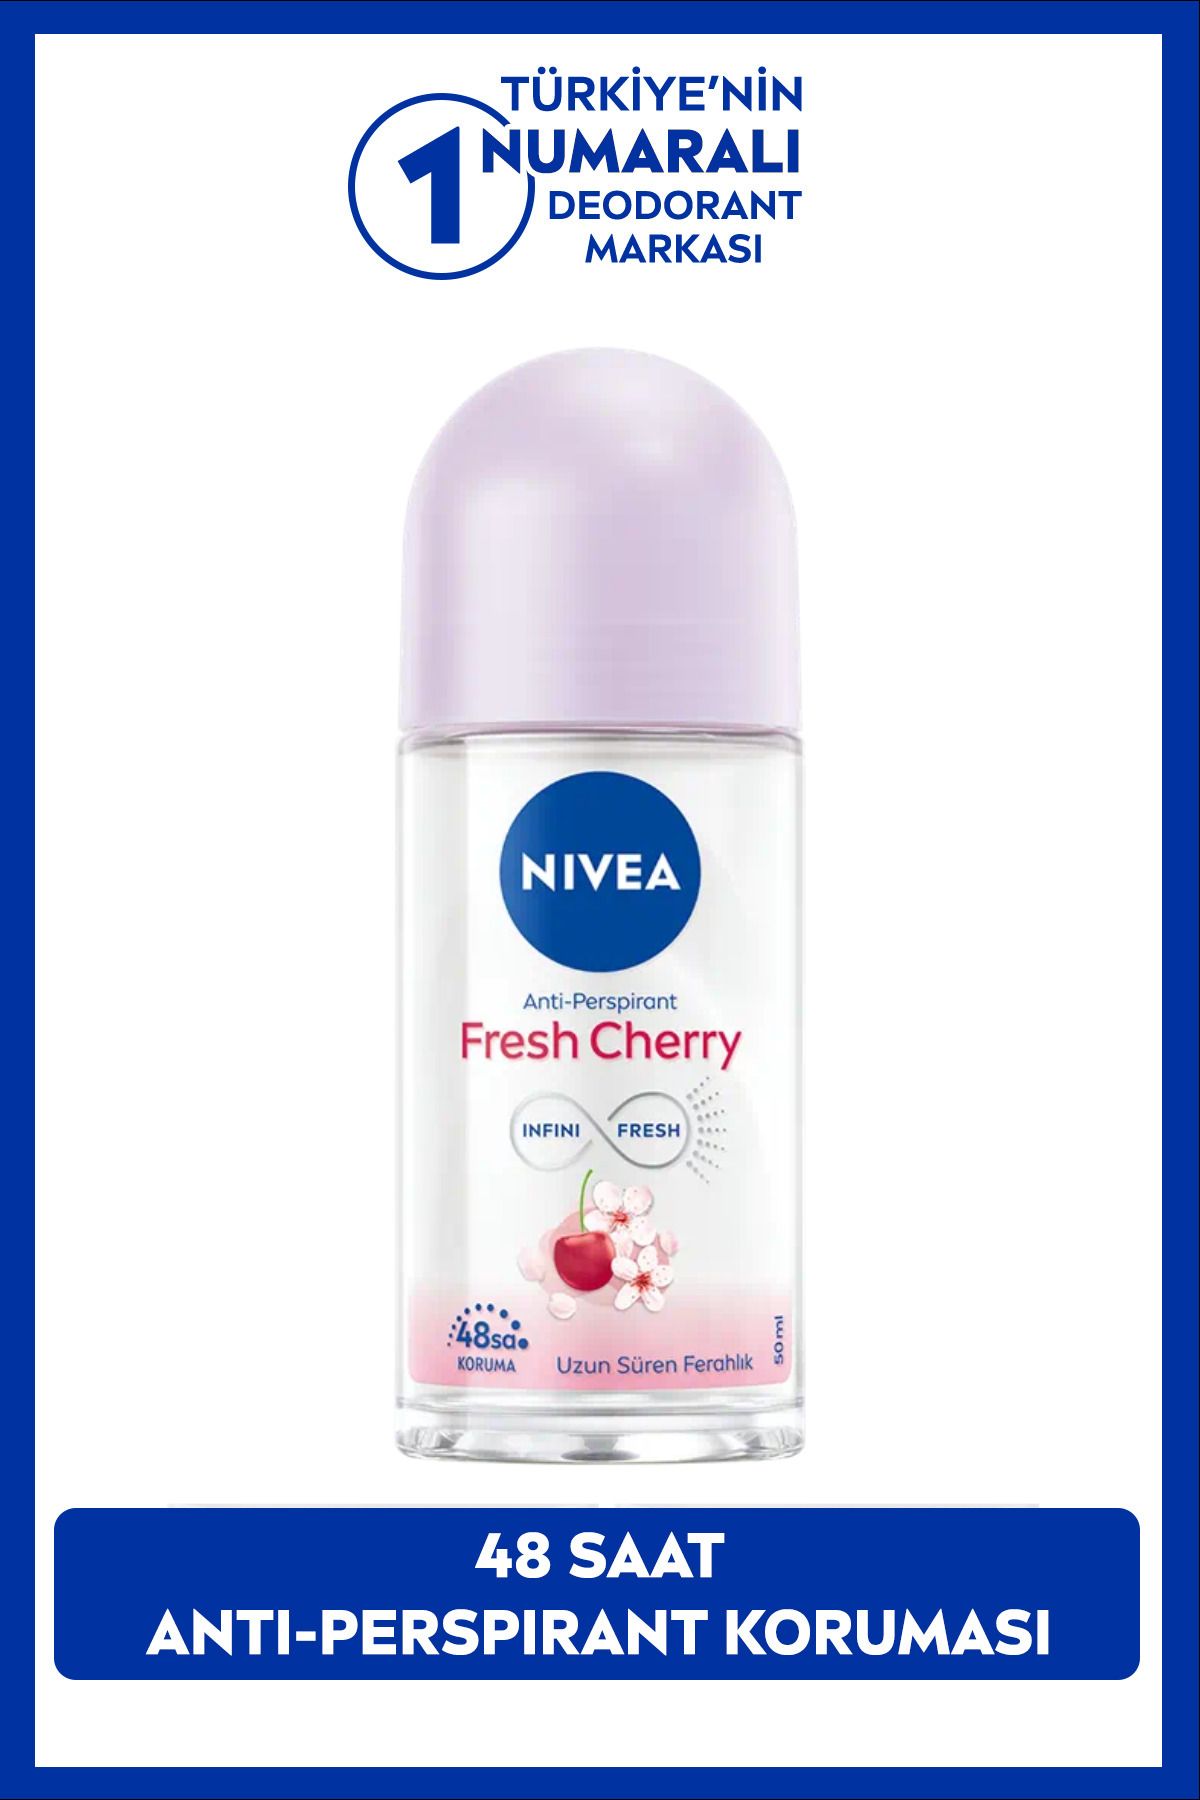 NIVEA Kadın Roll-on Deodorant Fresh Cherry 50ml, Gün Boyu Ferahlık, Kiraz Kokusu, 48 Saat Ter Koruması